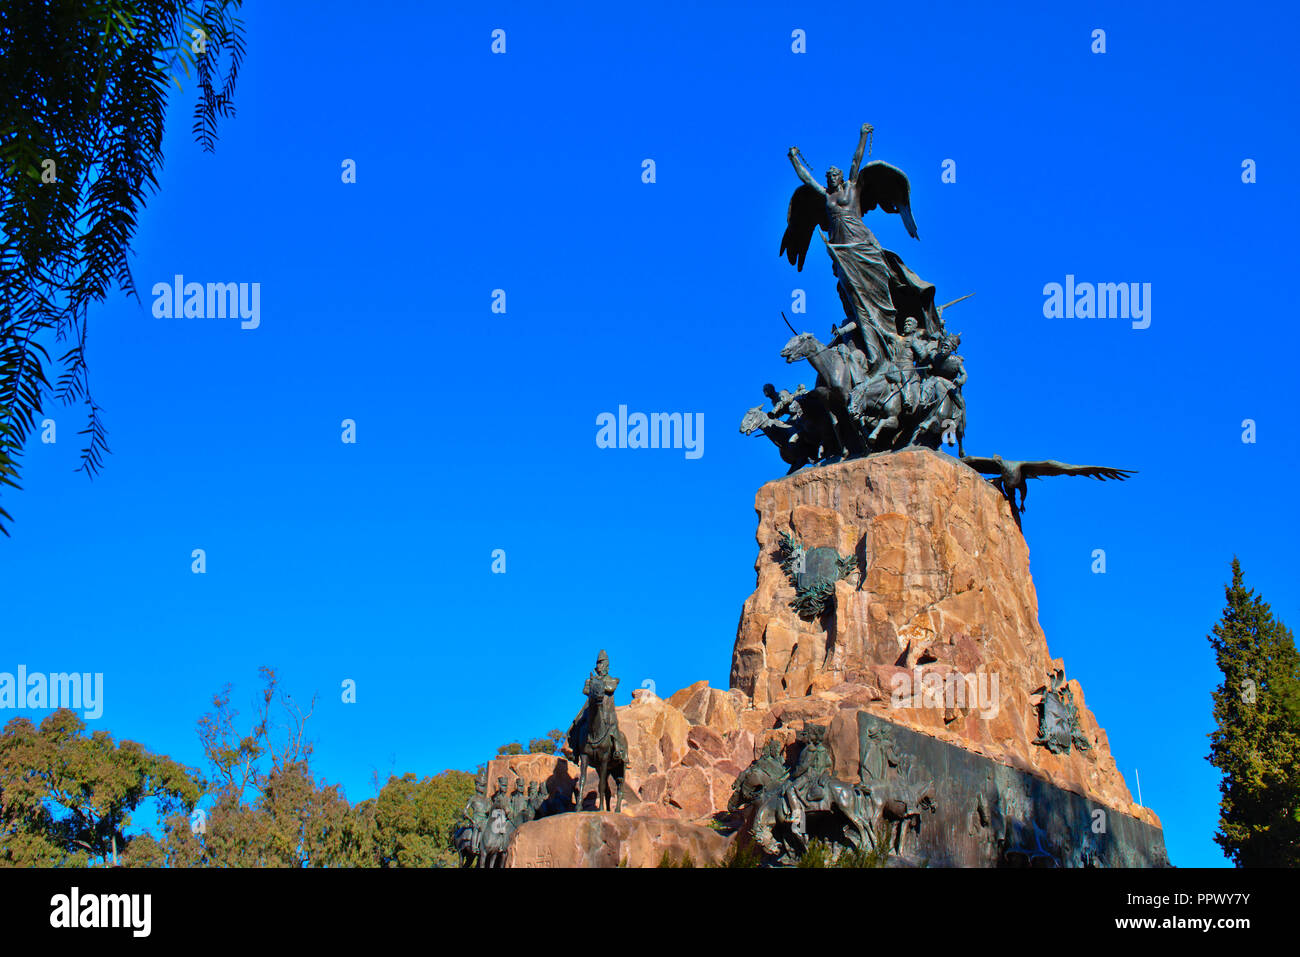 Statue on the Cerro de la Gloria hill in Mendoza - Argentina Stock Photo